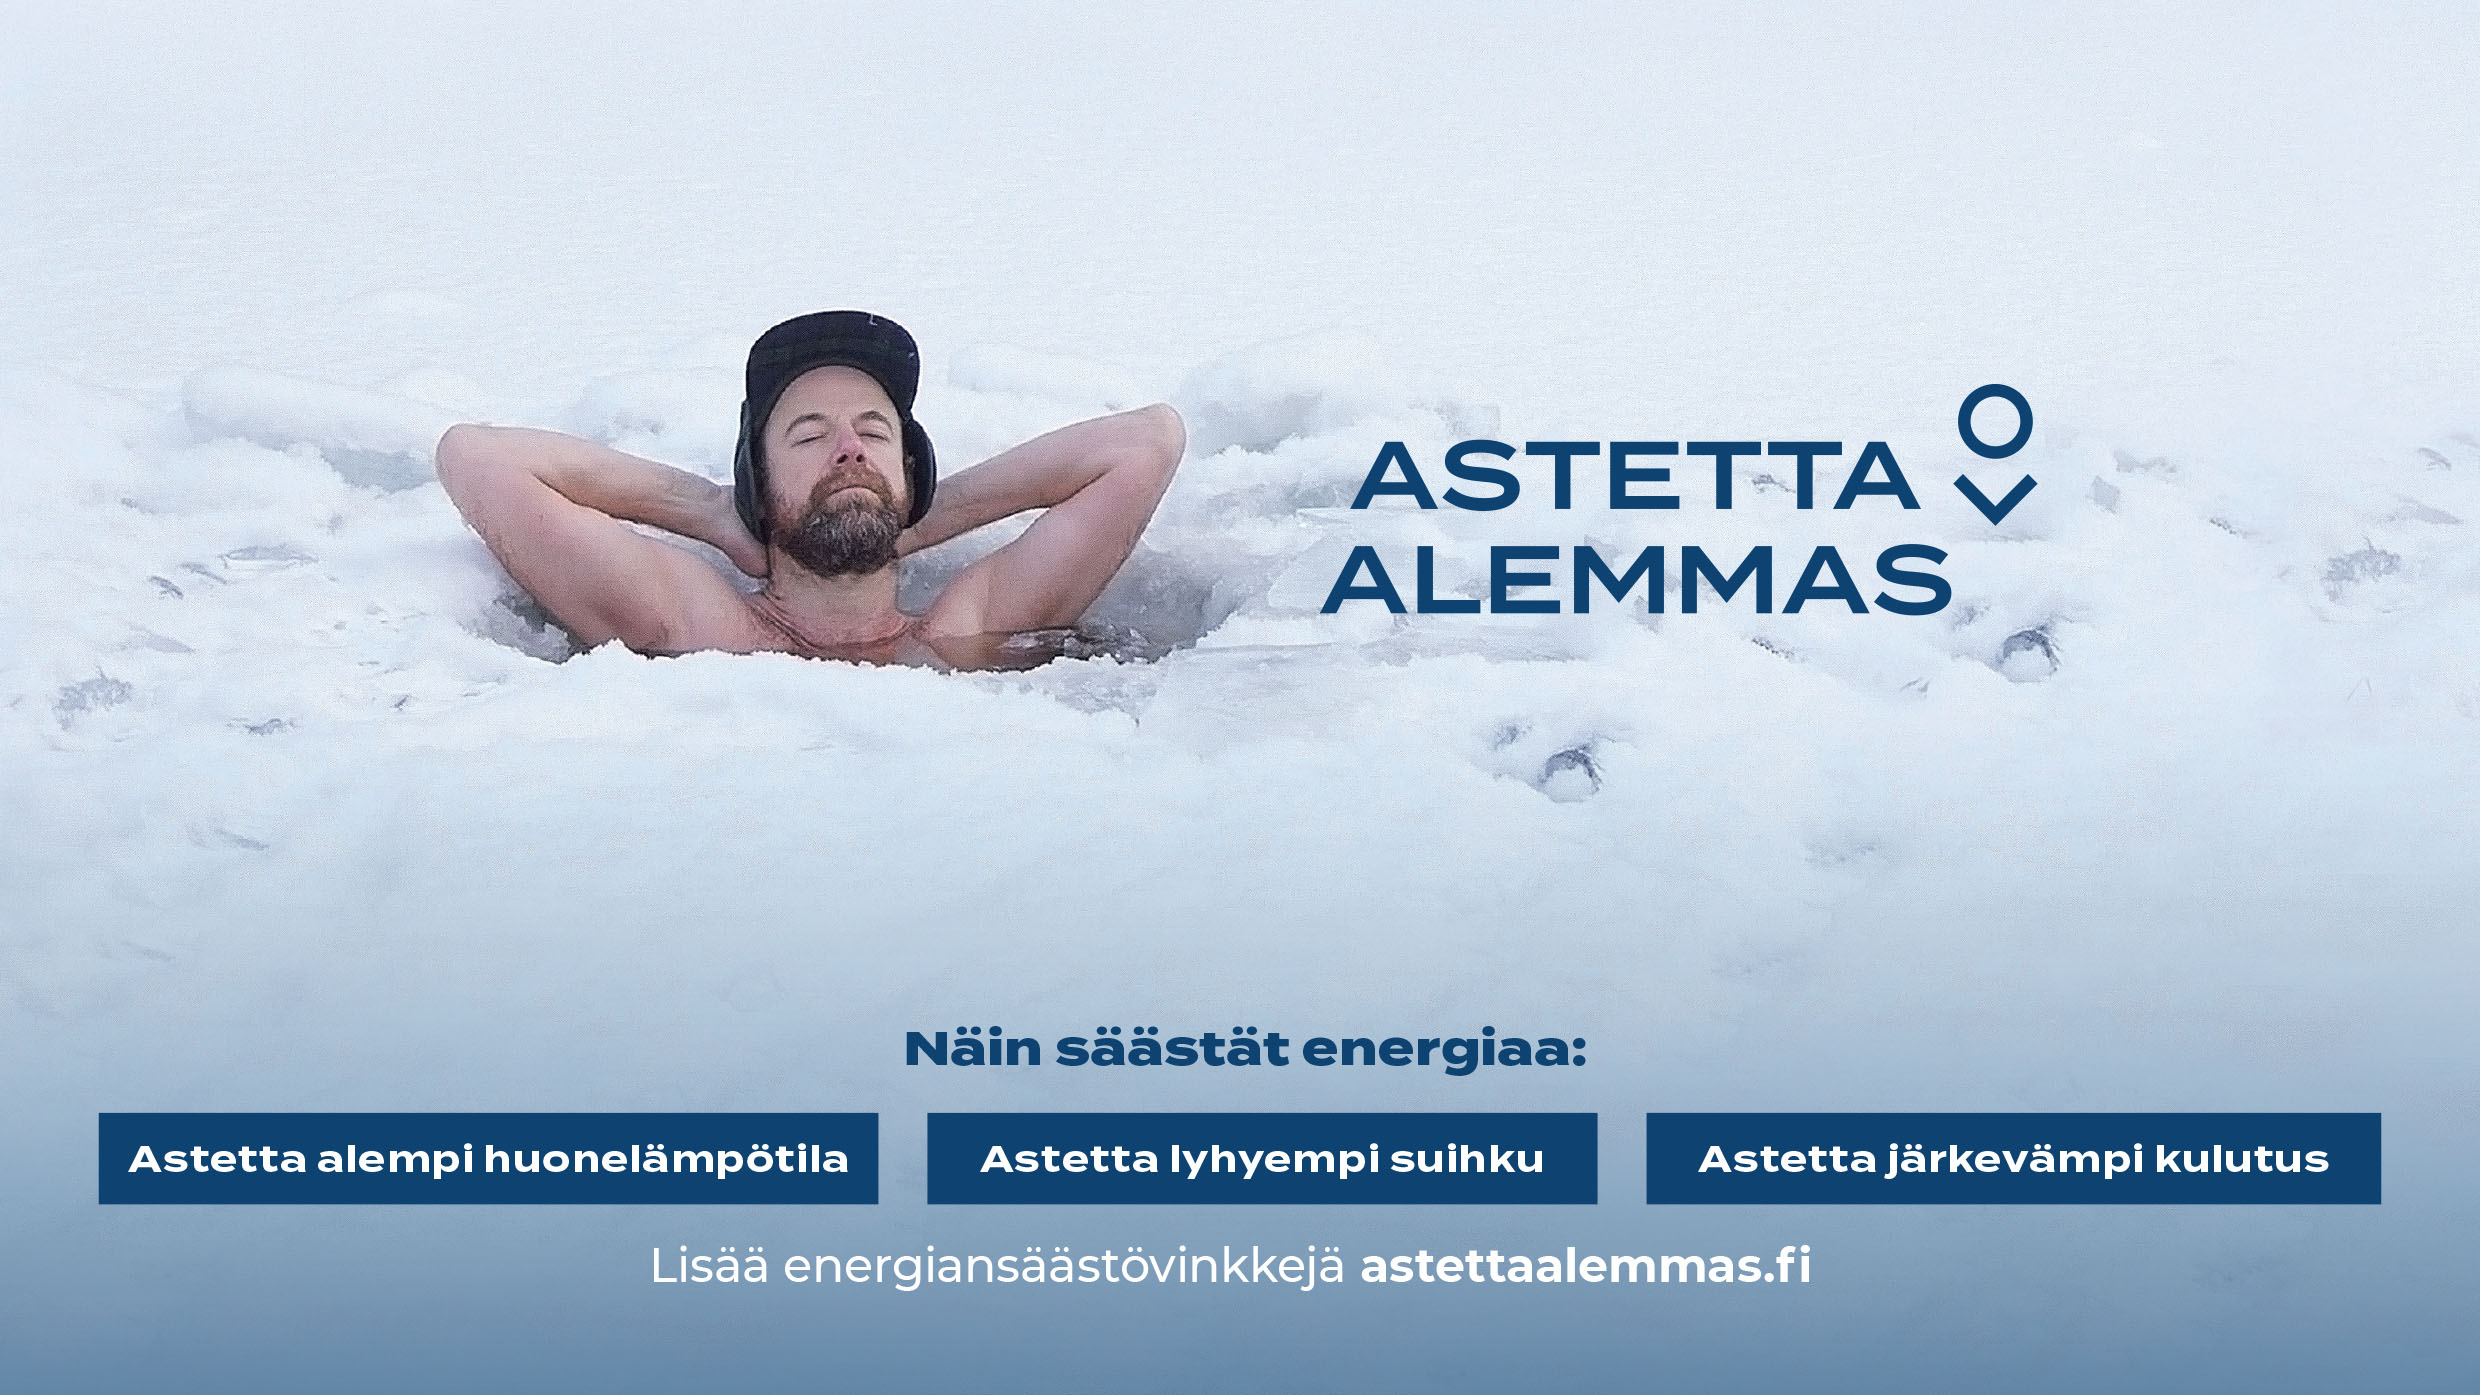 Lokakuun Kuukauden aikkarimainos -kilpailun voitti ajankohtainen ja jokaisen arkeen vaikuttava Astetta alemmas -mainoskampanja, joka kehottaa suomalaisia laskemaan lämpötilaa ja säästämään energiaa. 